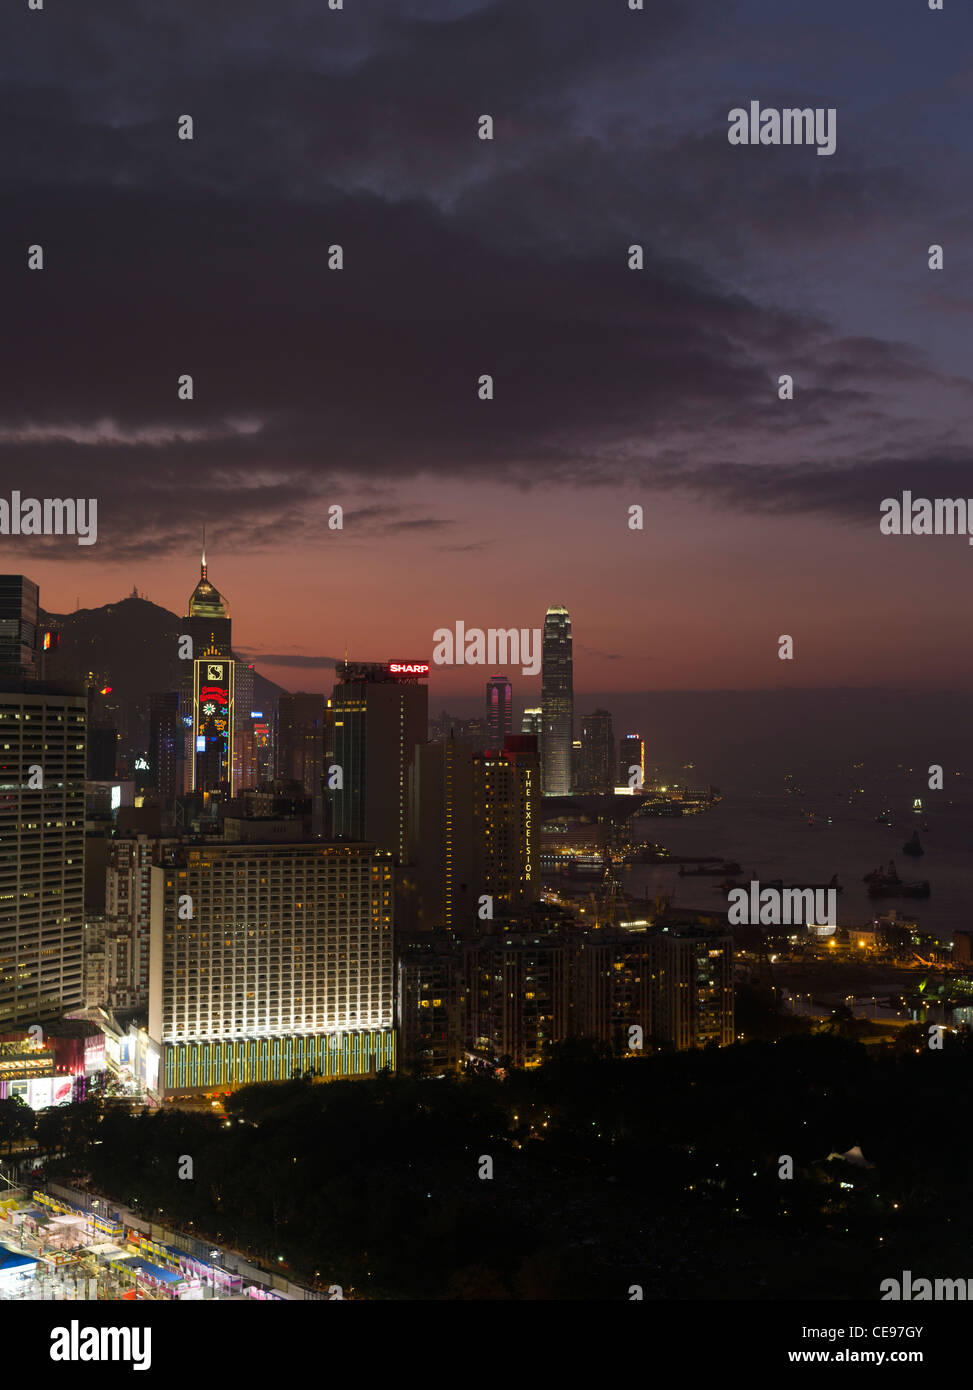 Hafengebäuden dh CAUSEWAY BAY Sunset in Hong Kong Skyline Dämmerung Nacht China Stadtbild Stockfoto